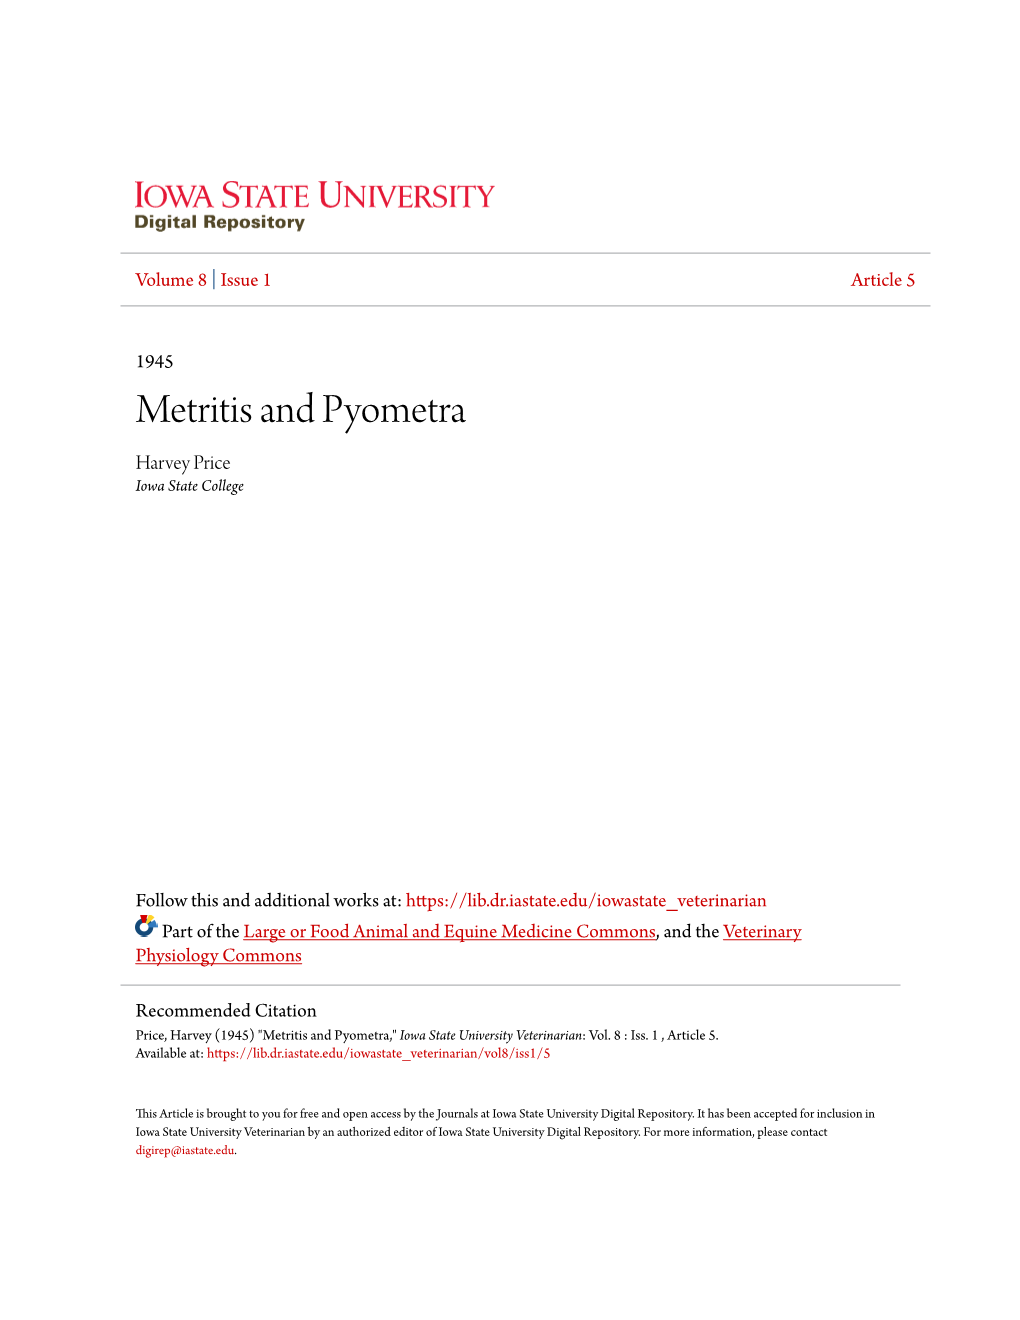 Metritis and Pyometra Harvey Price Iowa State College